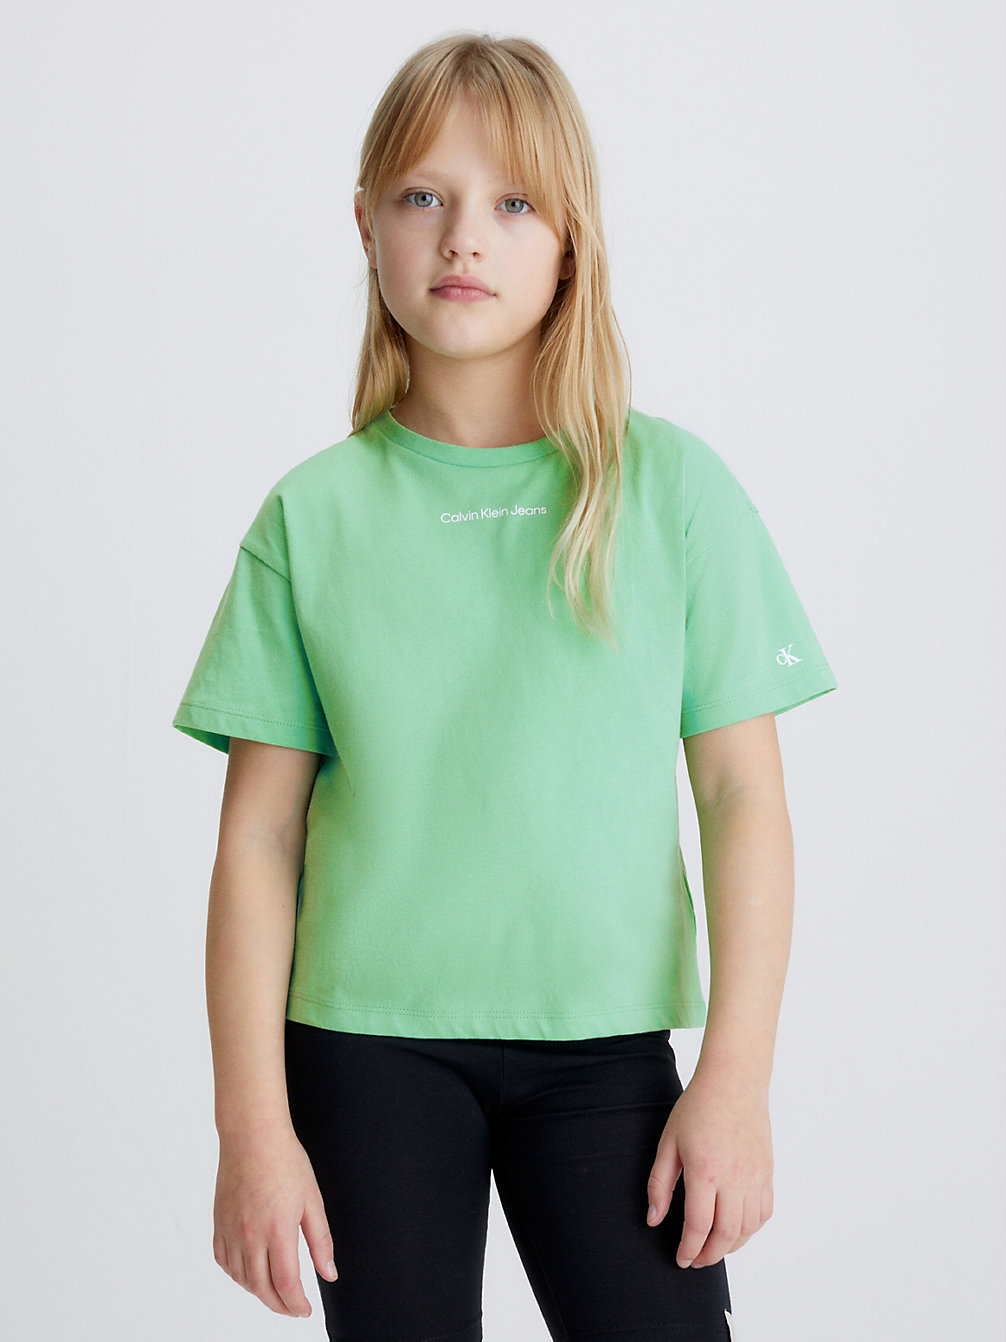 NEPTUNES WAVE > Kastiges T-Shirt Aus Bio-Baumwolle > undefined girls - Calvin Klein